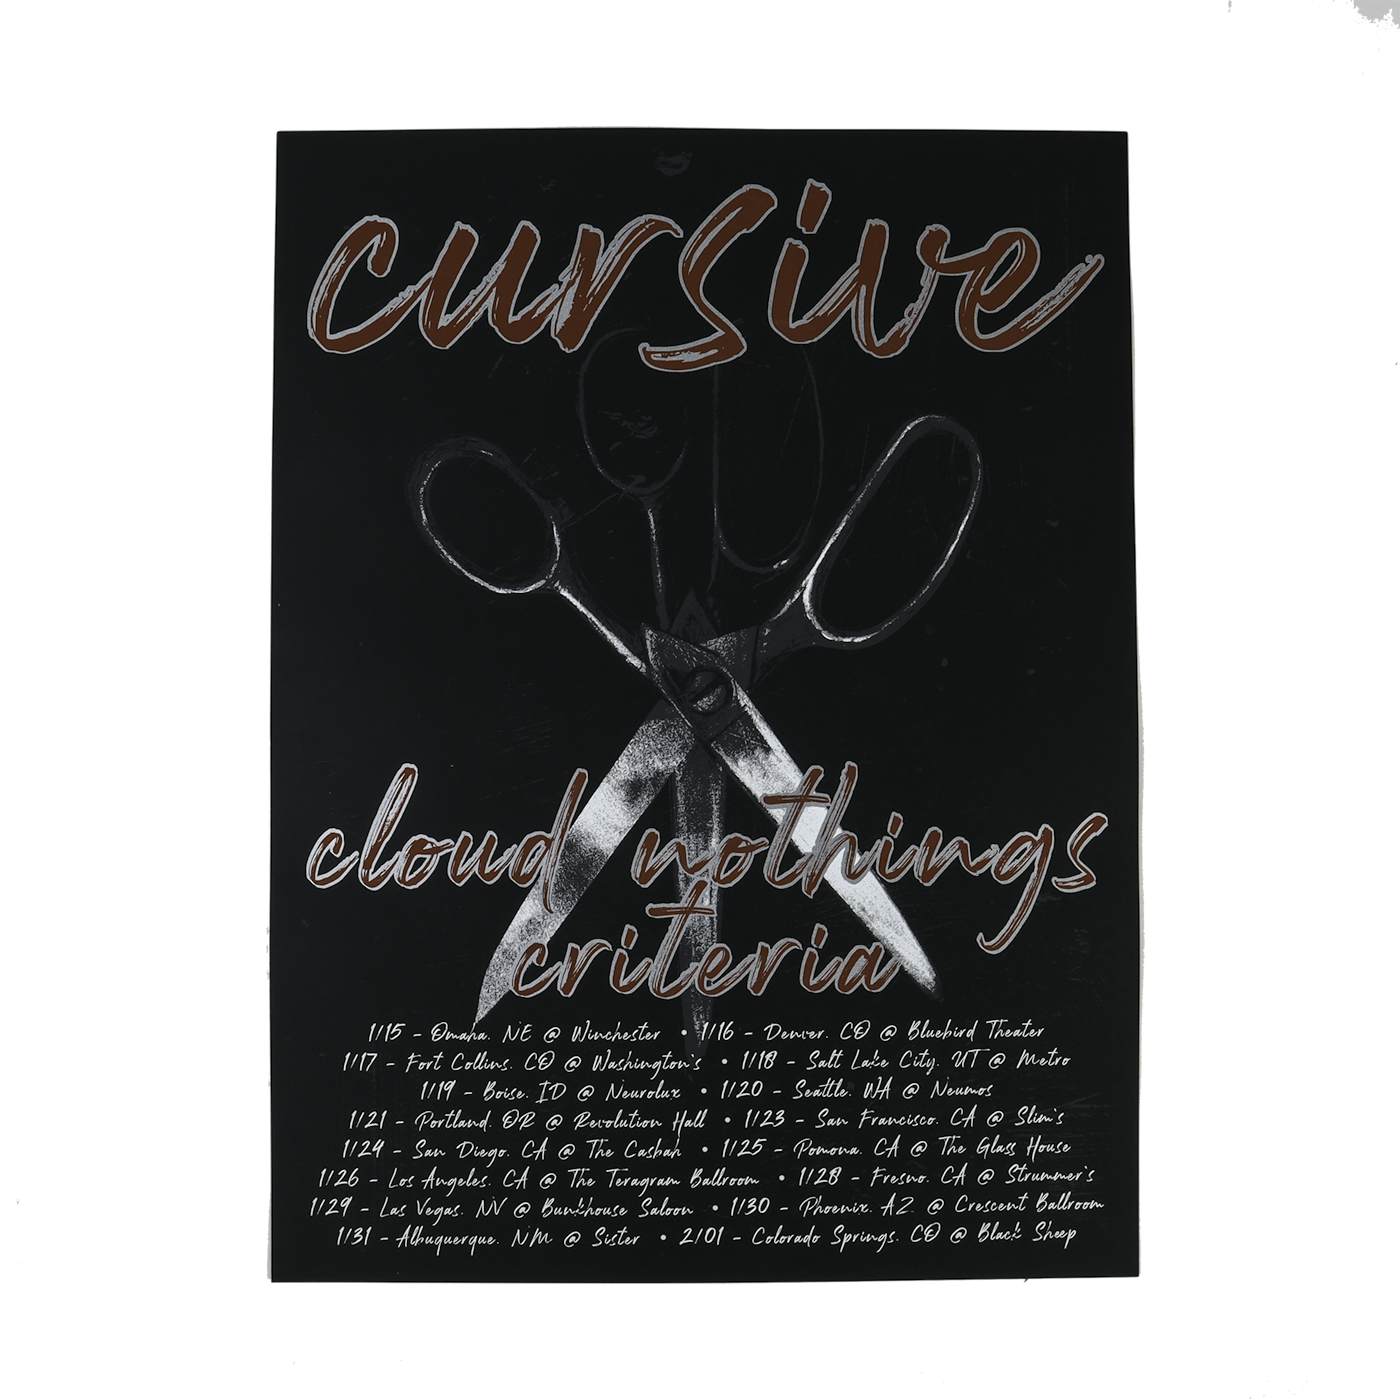 Cursive | Cursive + Cloud Nothings + Criteria Tour Poster